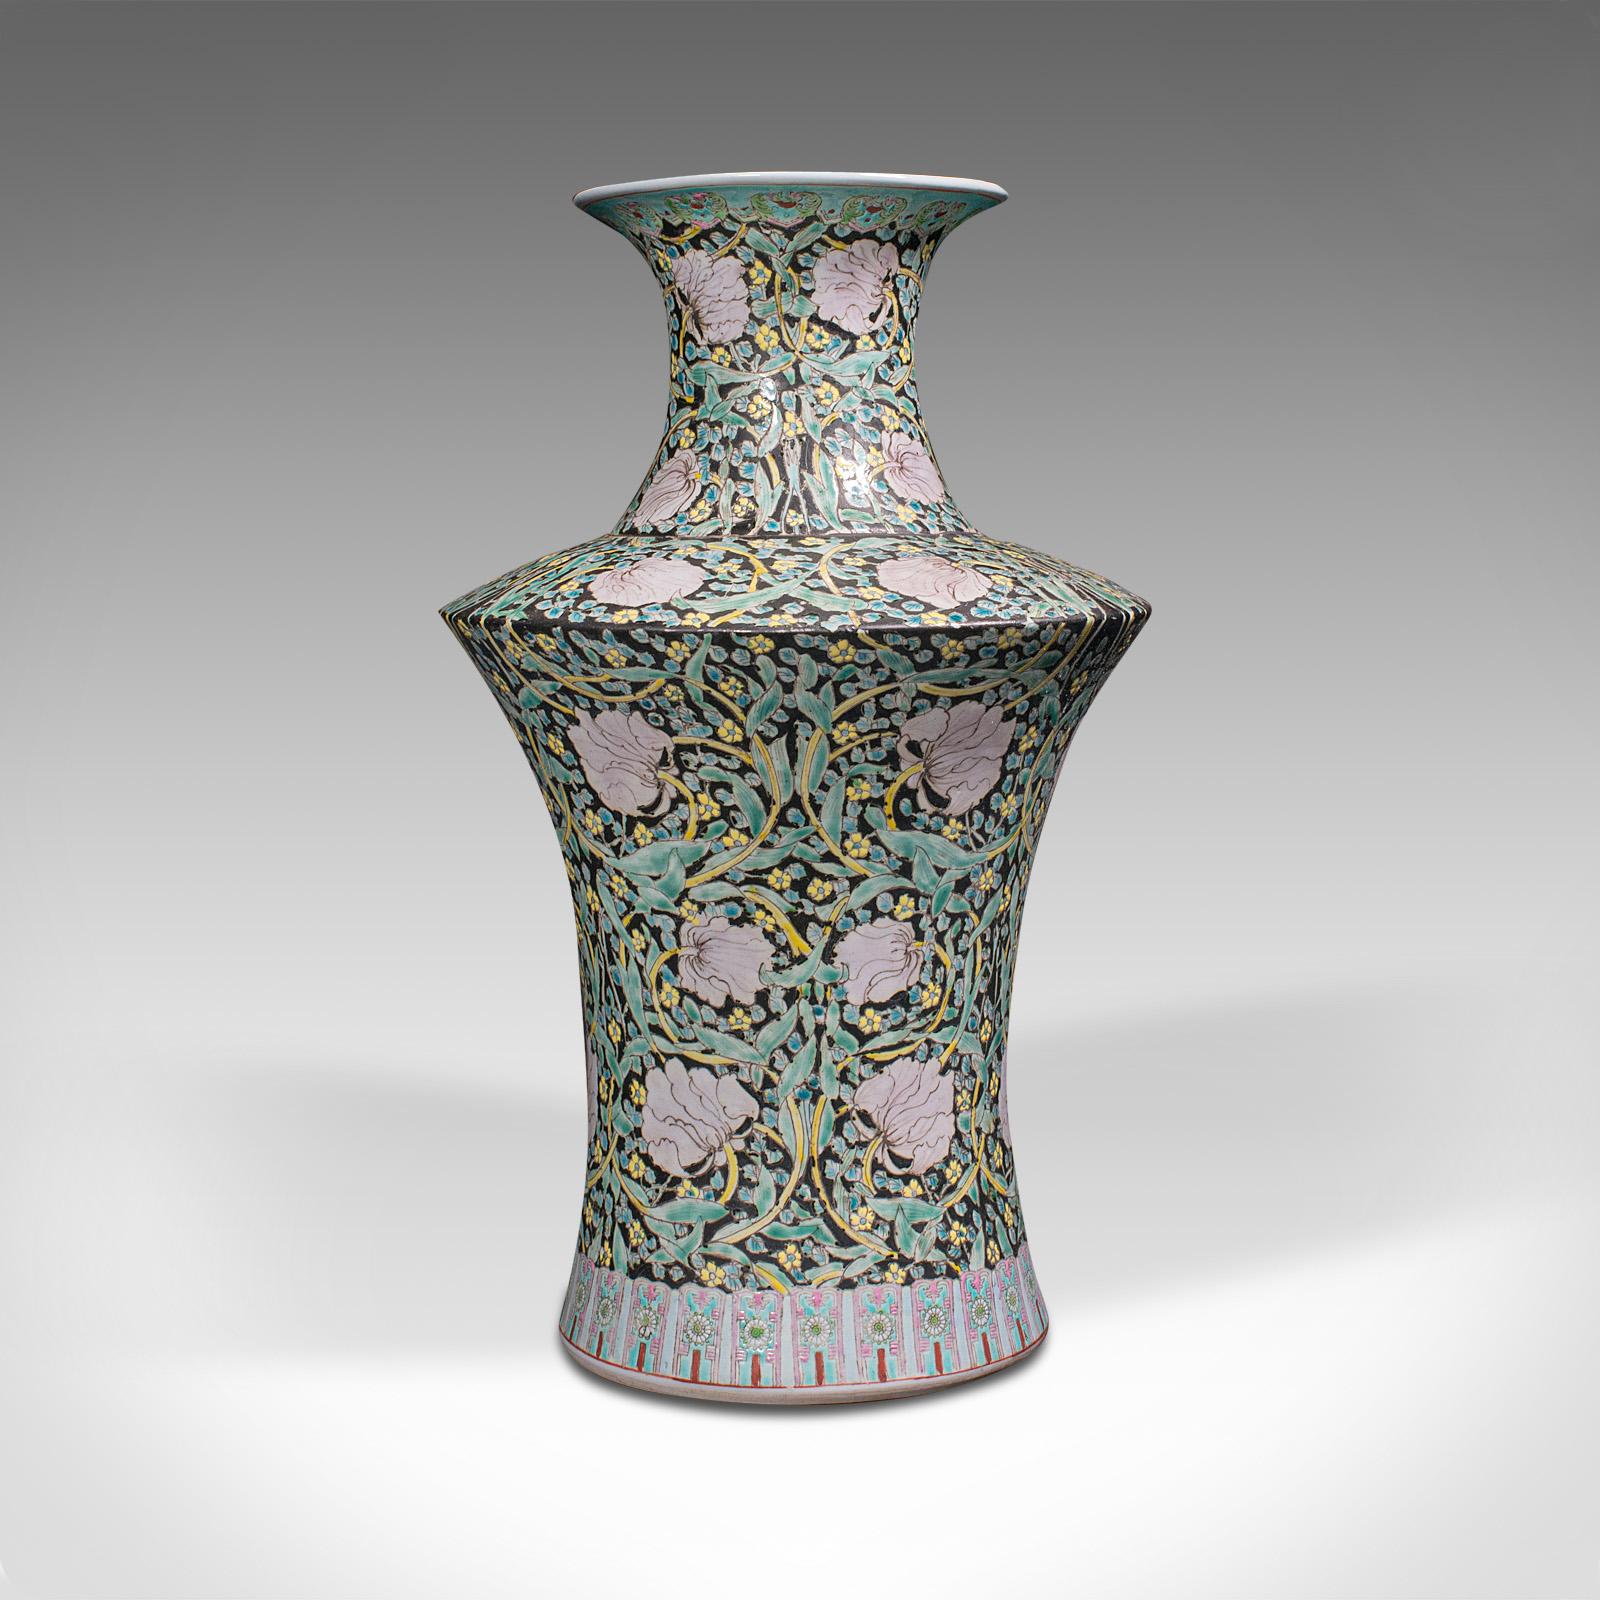 Dies ist eine große Vintage-Blumenvase. Dekorative Urne aus orientalischer Keramik, aus der Zeit des späten Art déco, um 1950. 

Mit auffälligen Proportionen und kühnen Formen
Zeigt durchgehend eine wünschenswerte gealterte Patina
Enthusiastisch